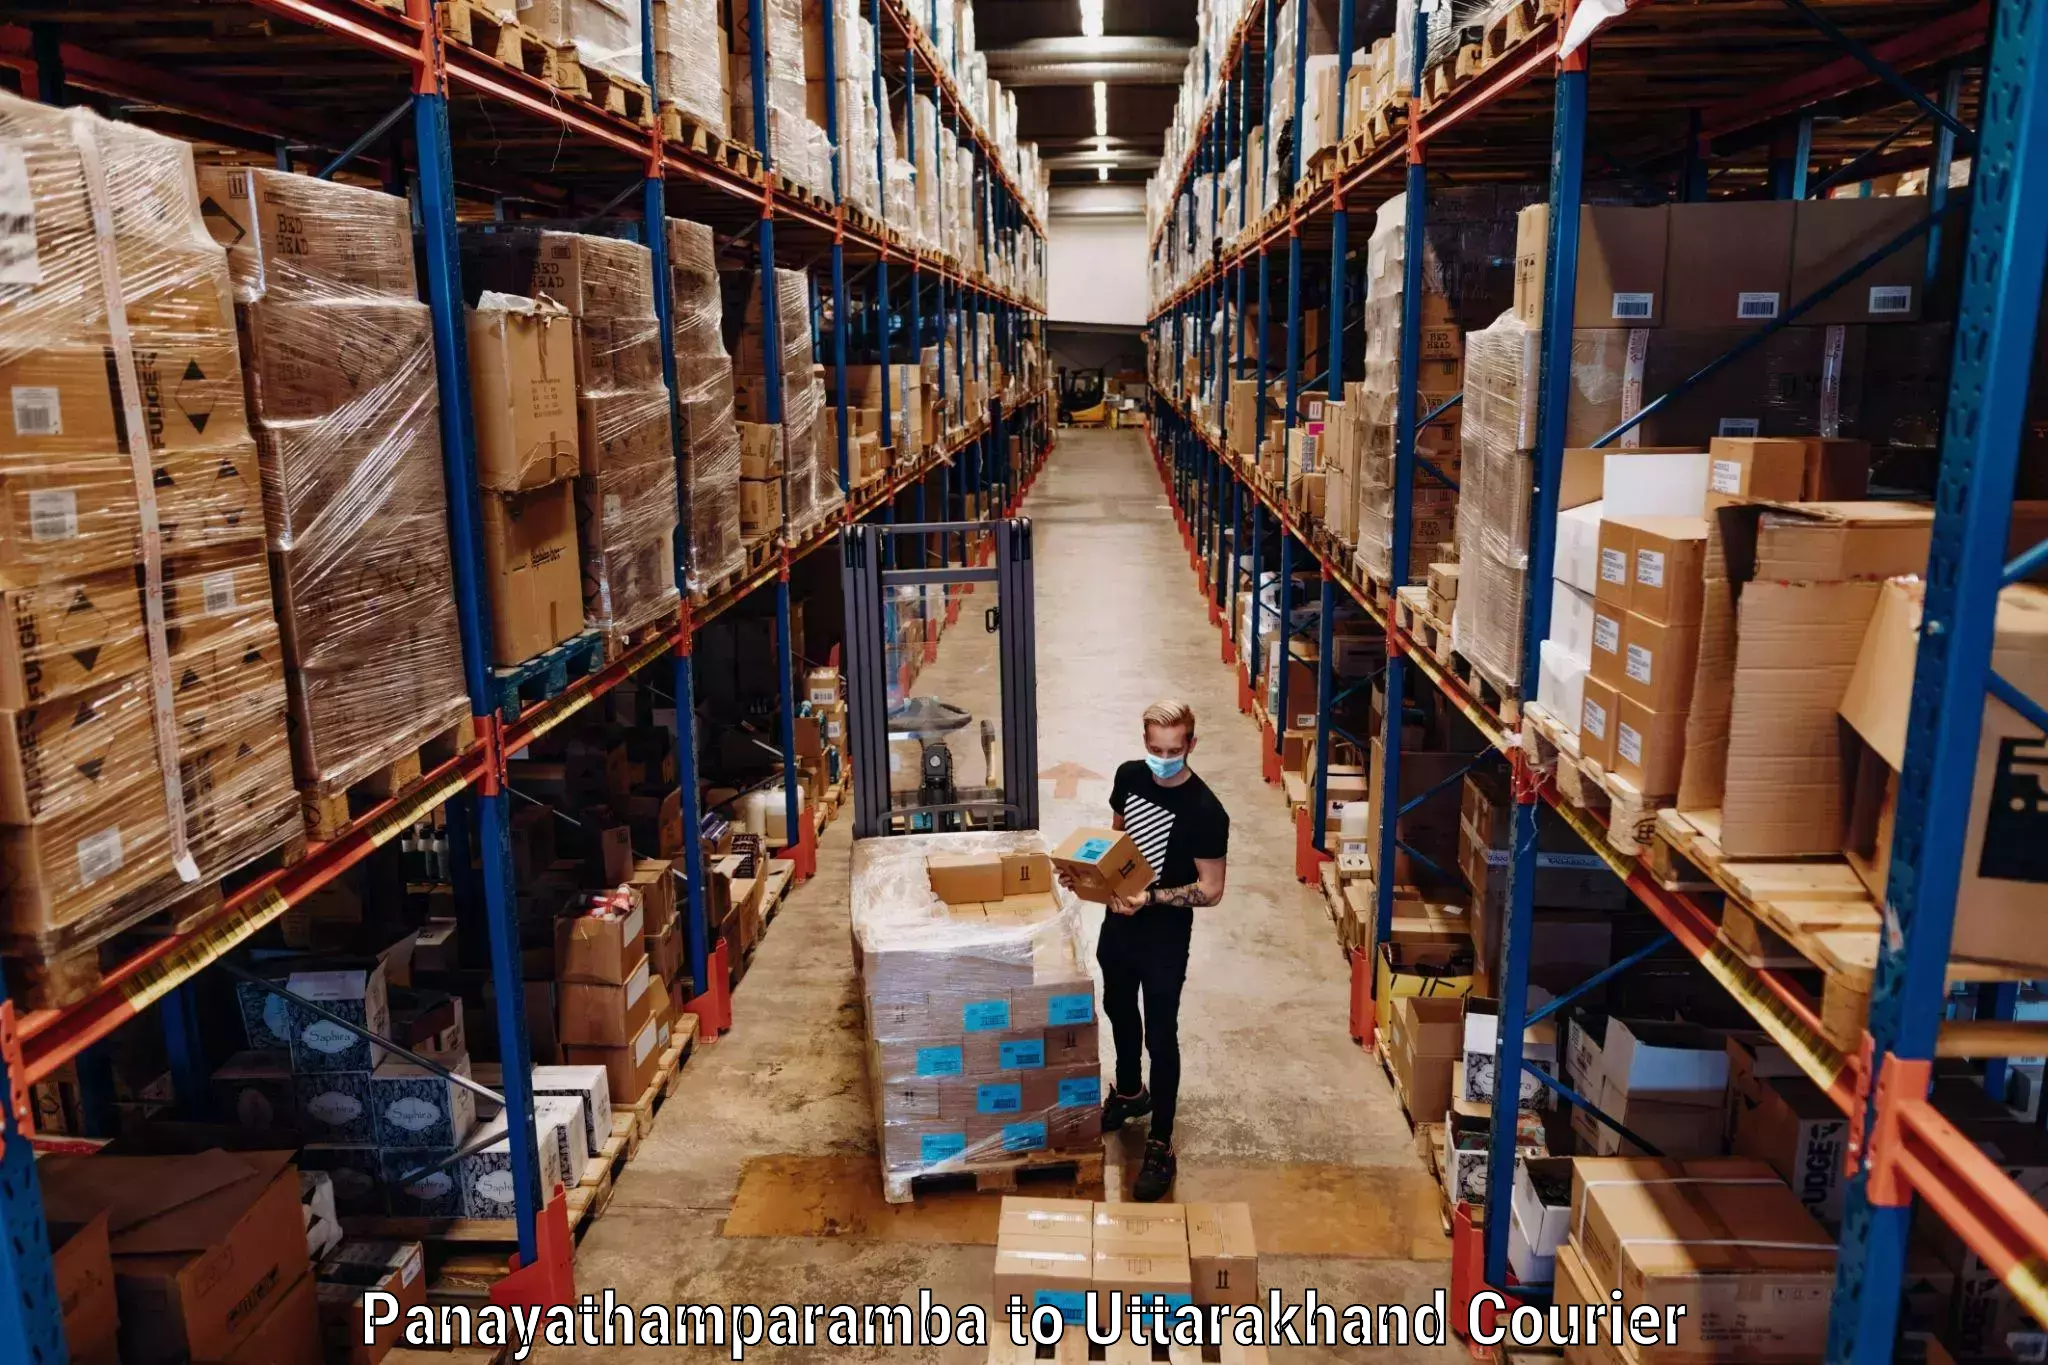 Baggage delivery solutions Panayathamparamba to Tehri Garhwal